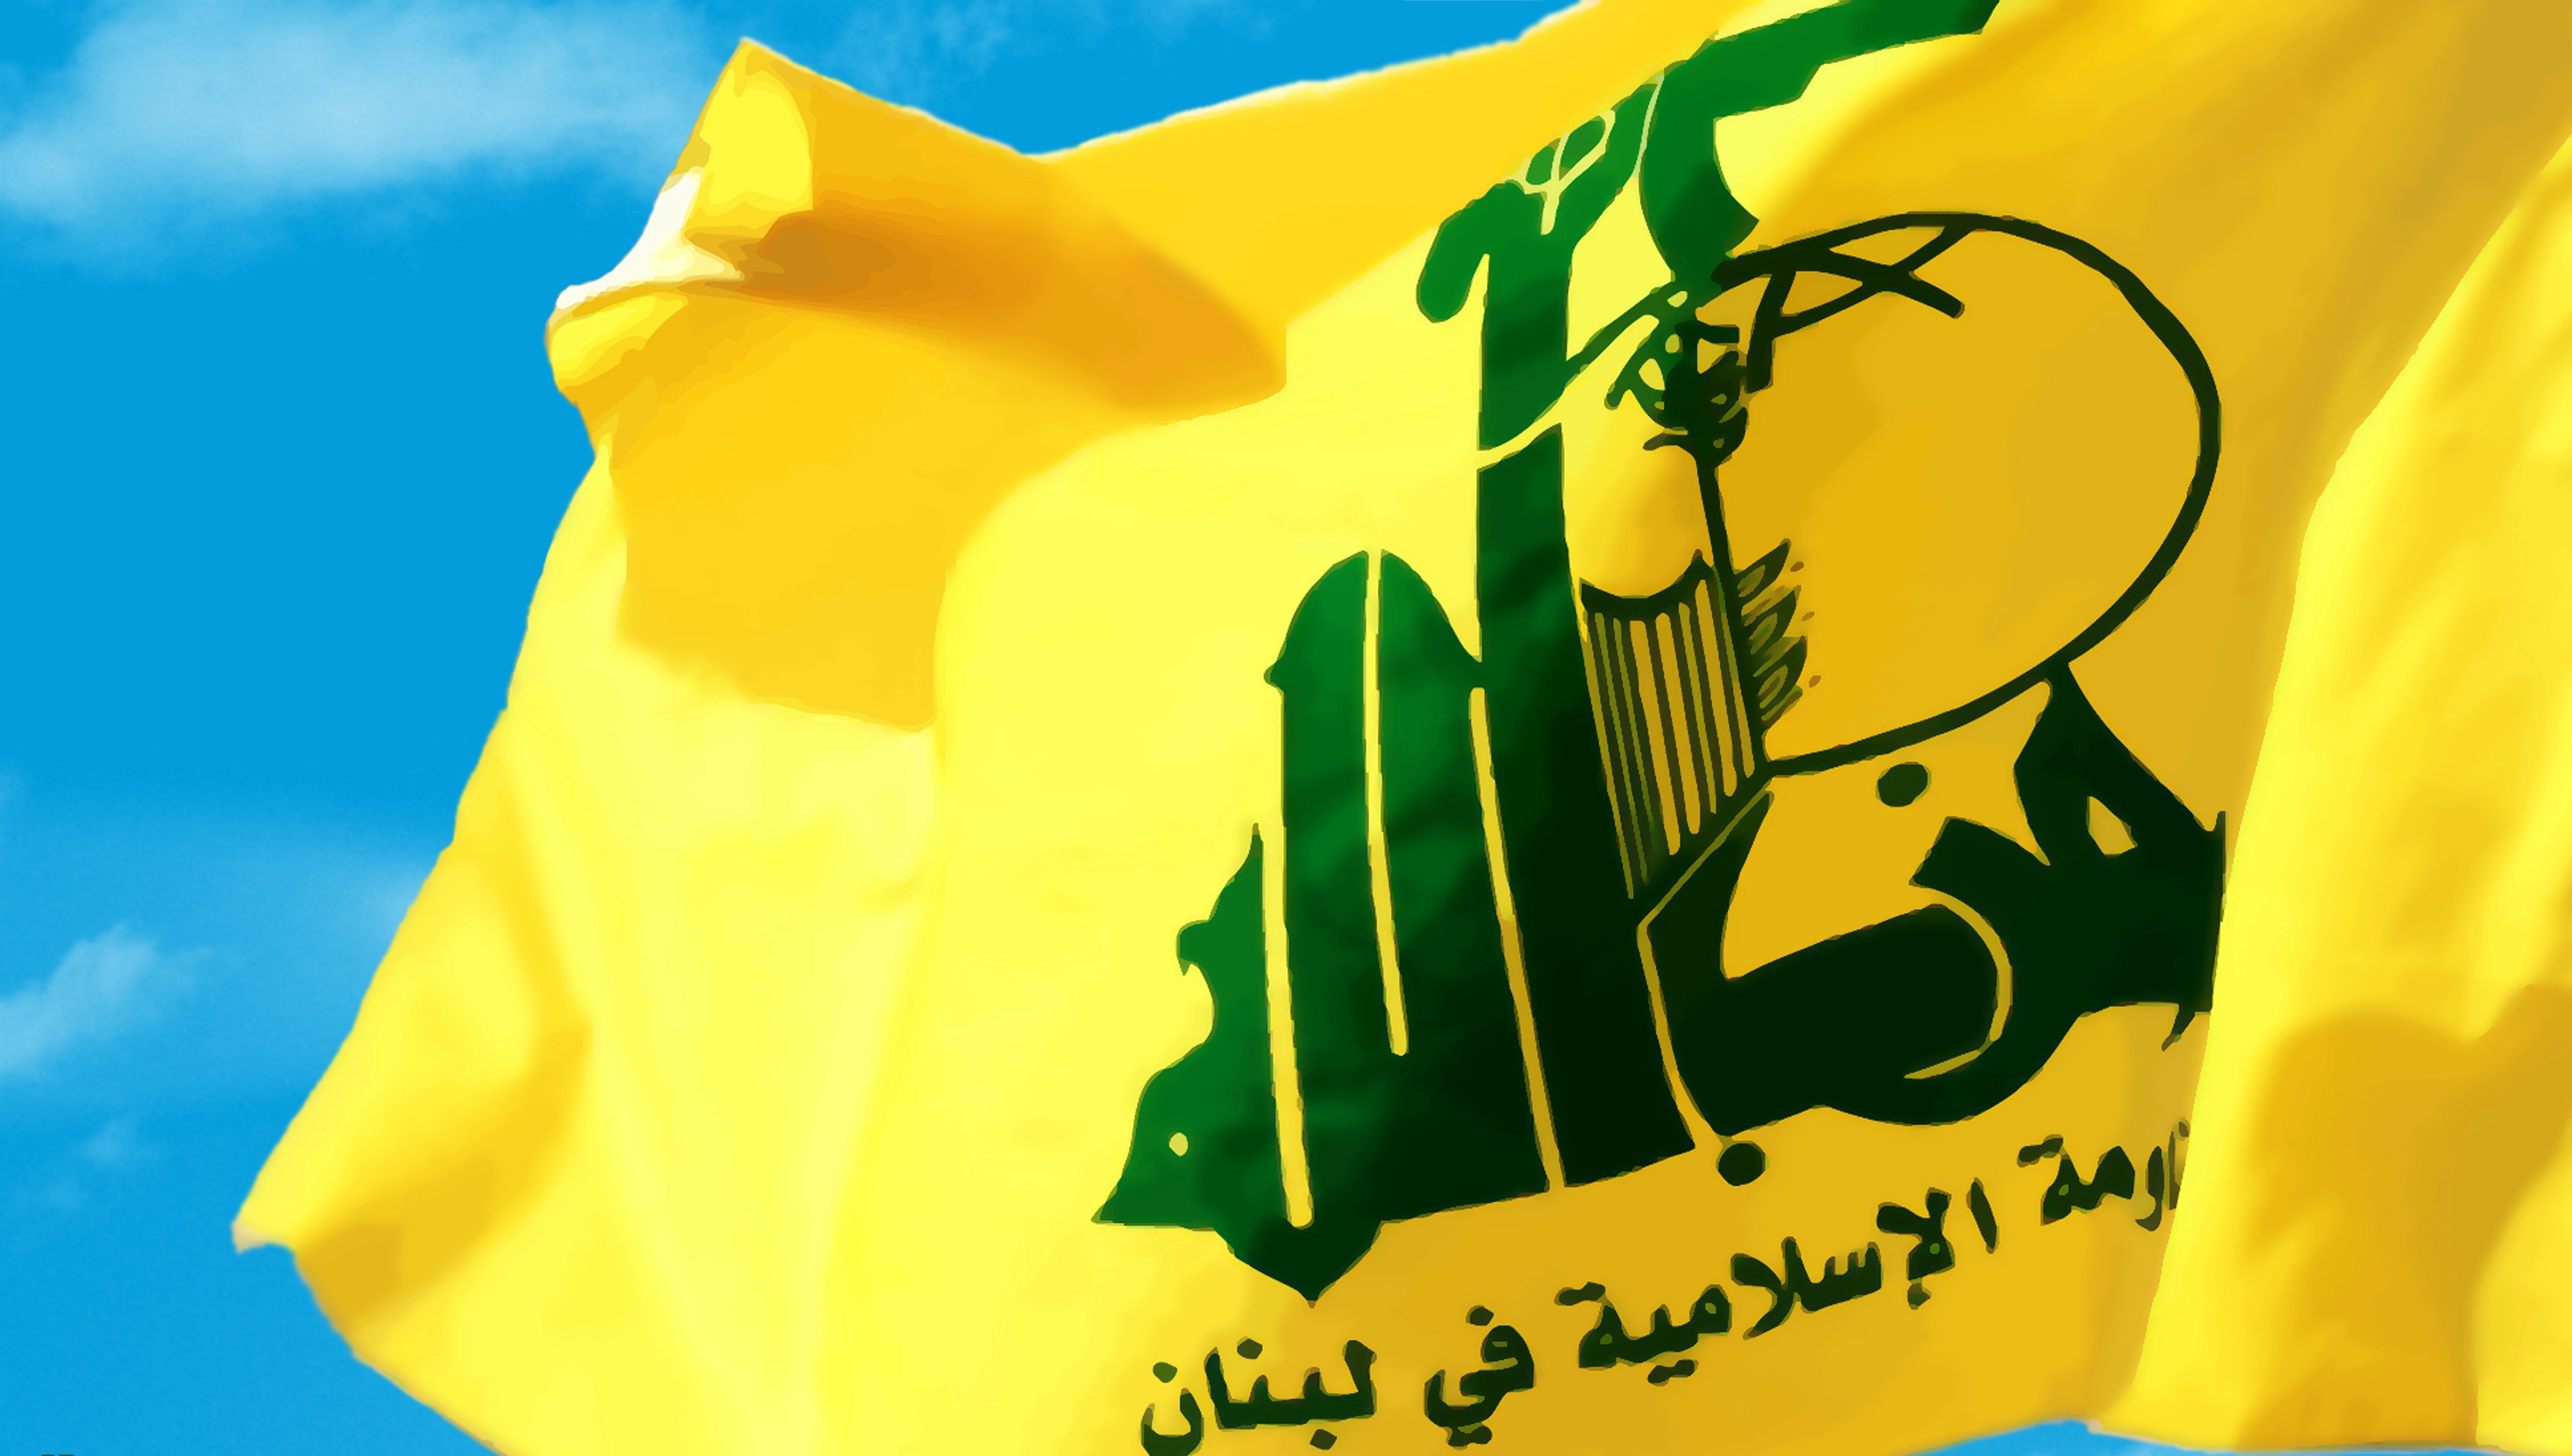 حزب الله لبنان حمله به اتوبوس دانش آموزان یمنی را محکوم کرد